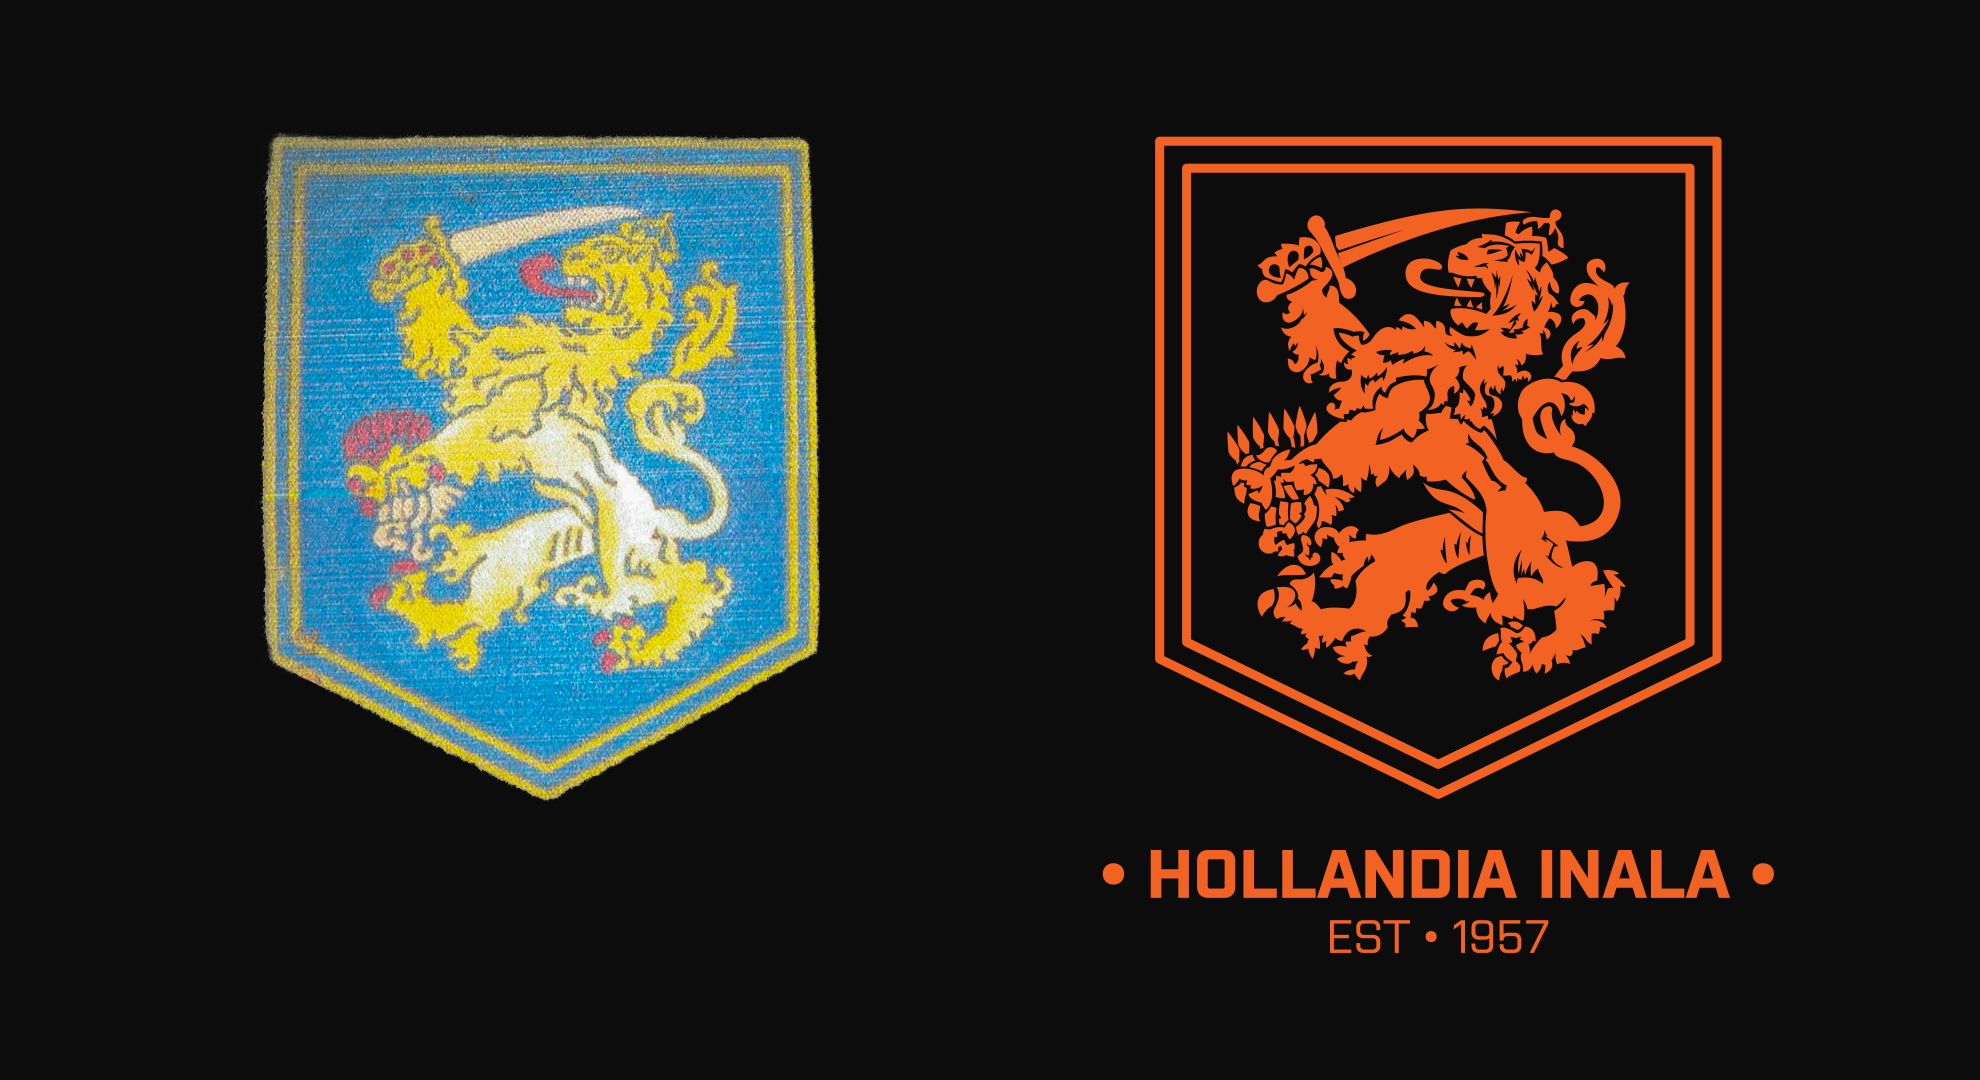 Hollandia Inala logo comparison